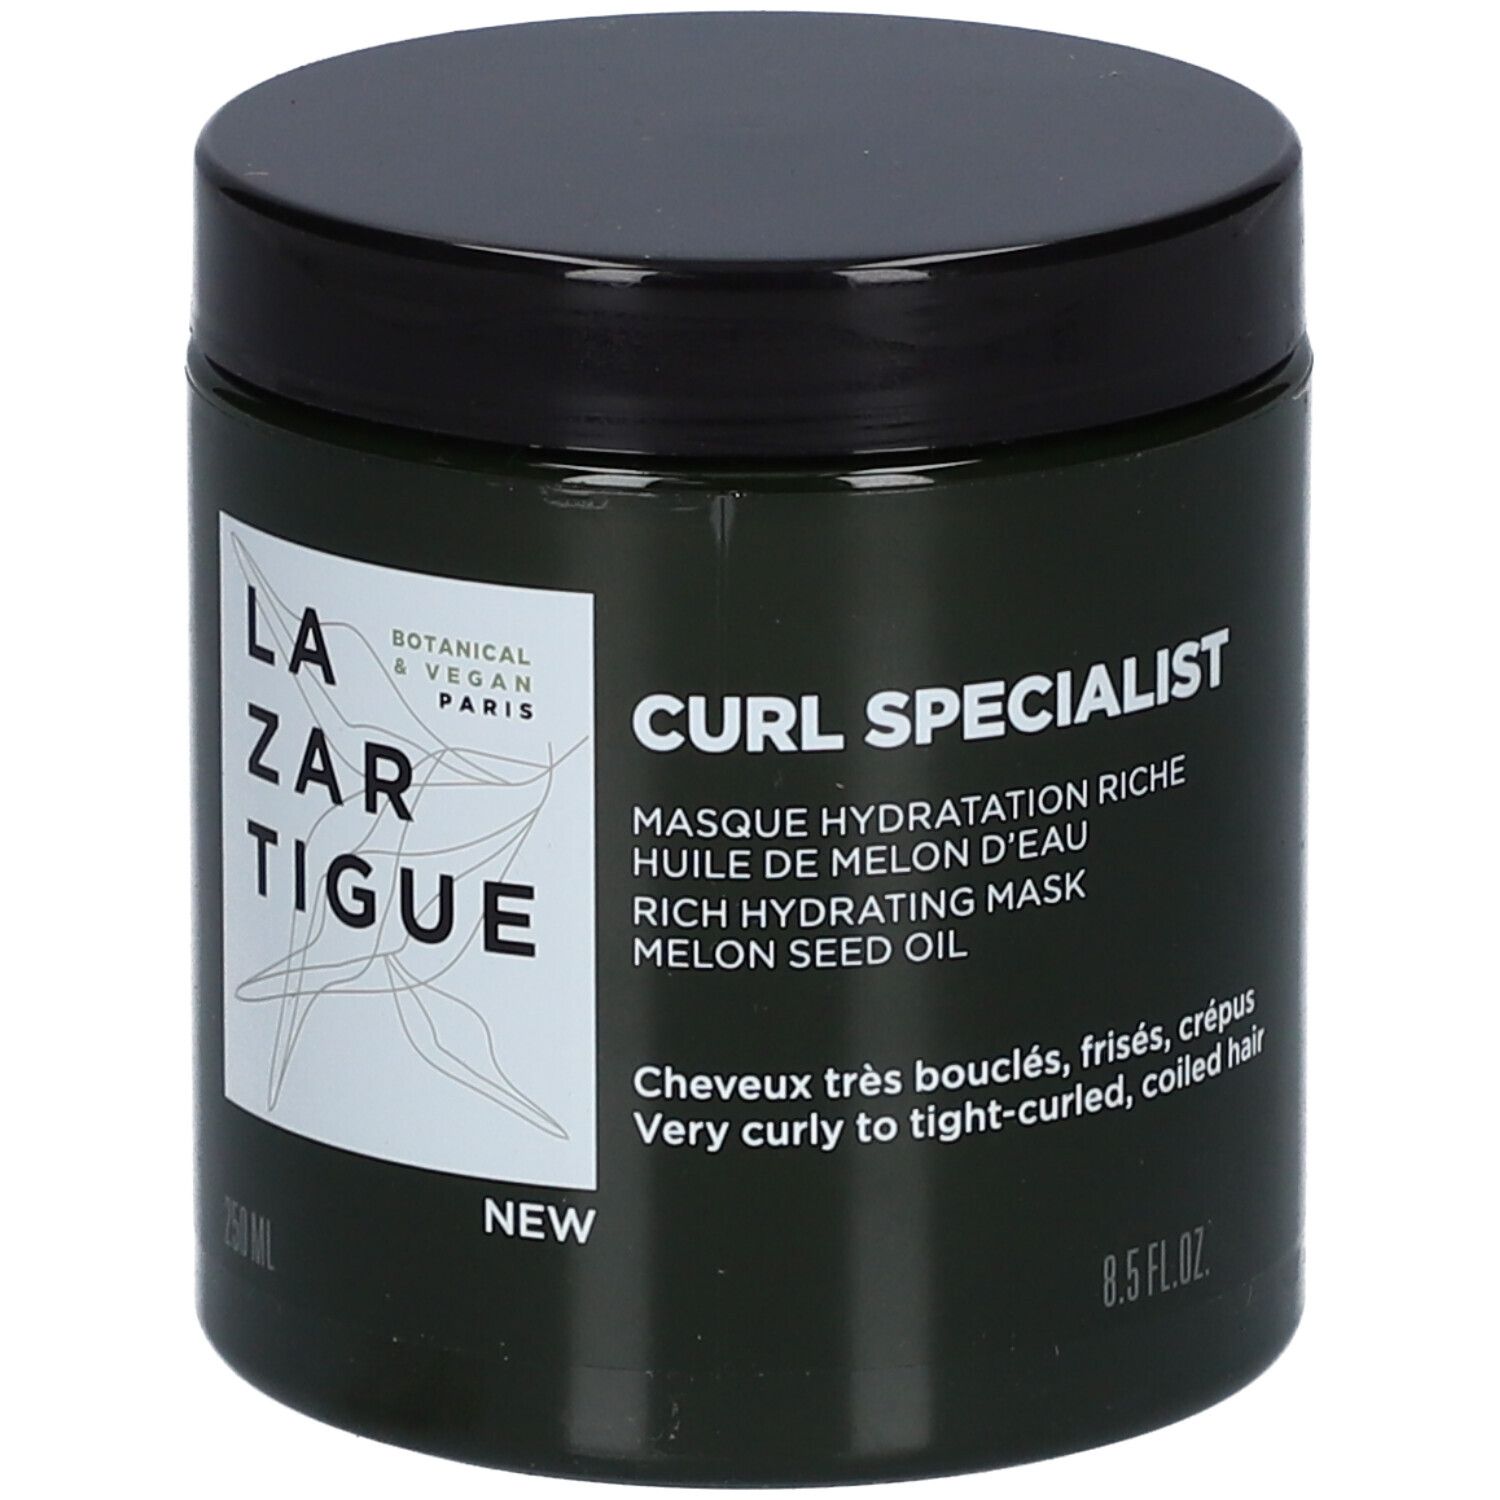 Lazartigue Curl Specialist Masque Hydratation Riche Huile de Melon d'Eau 250 ml masque